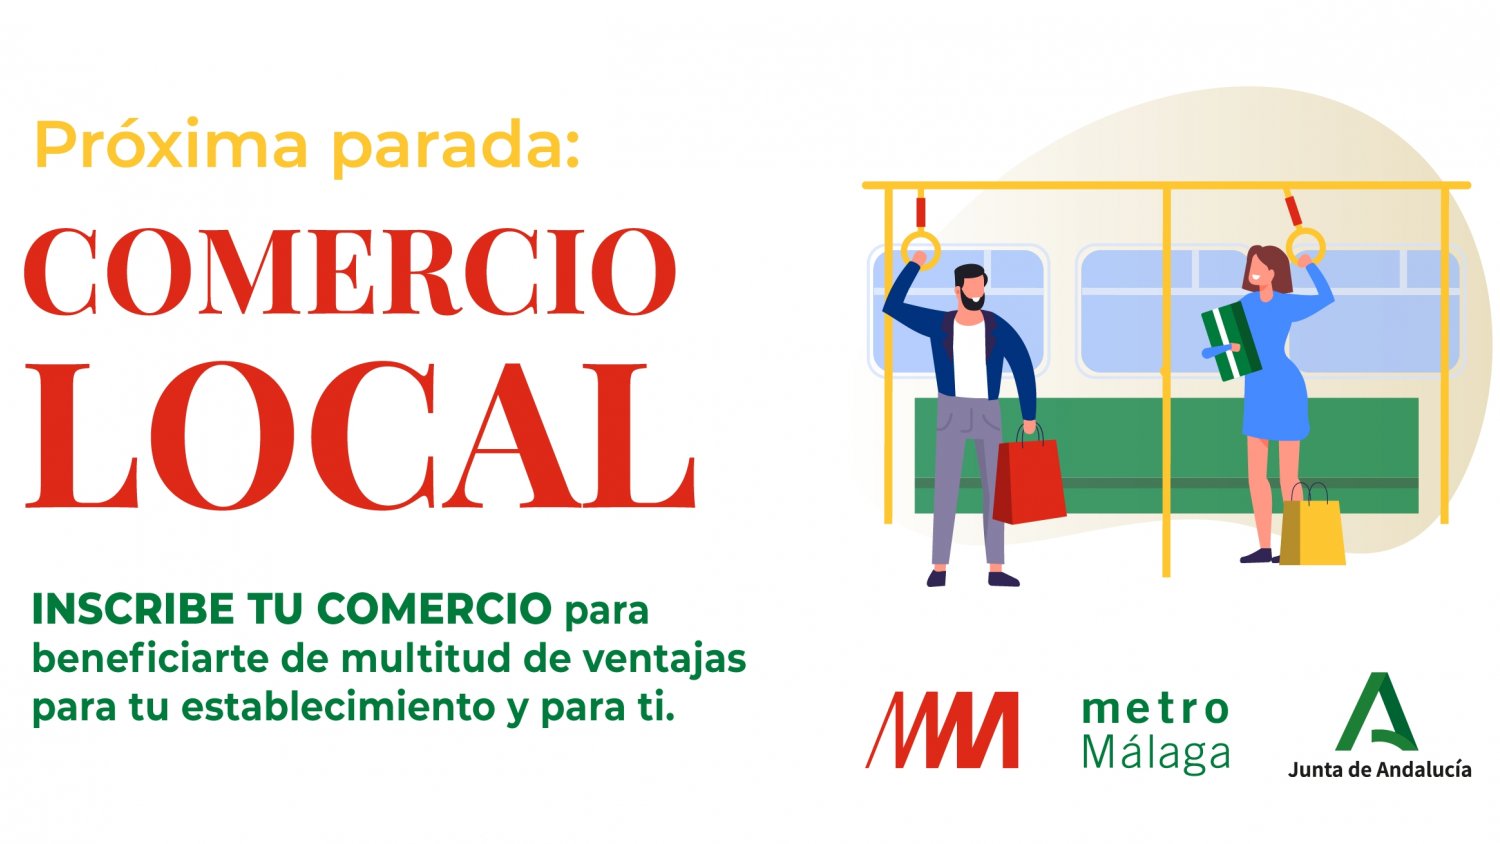 Metro de Málaga inicia una campaña digital para promocionar el comercio local